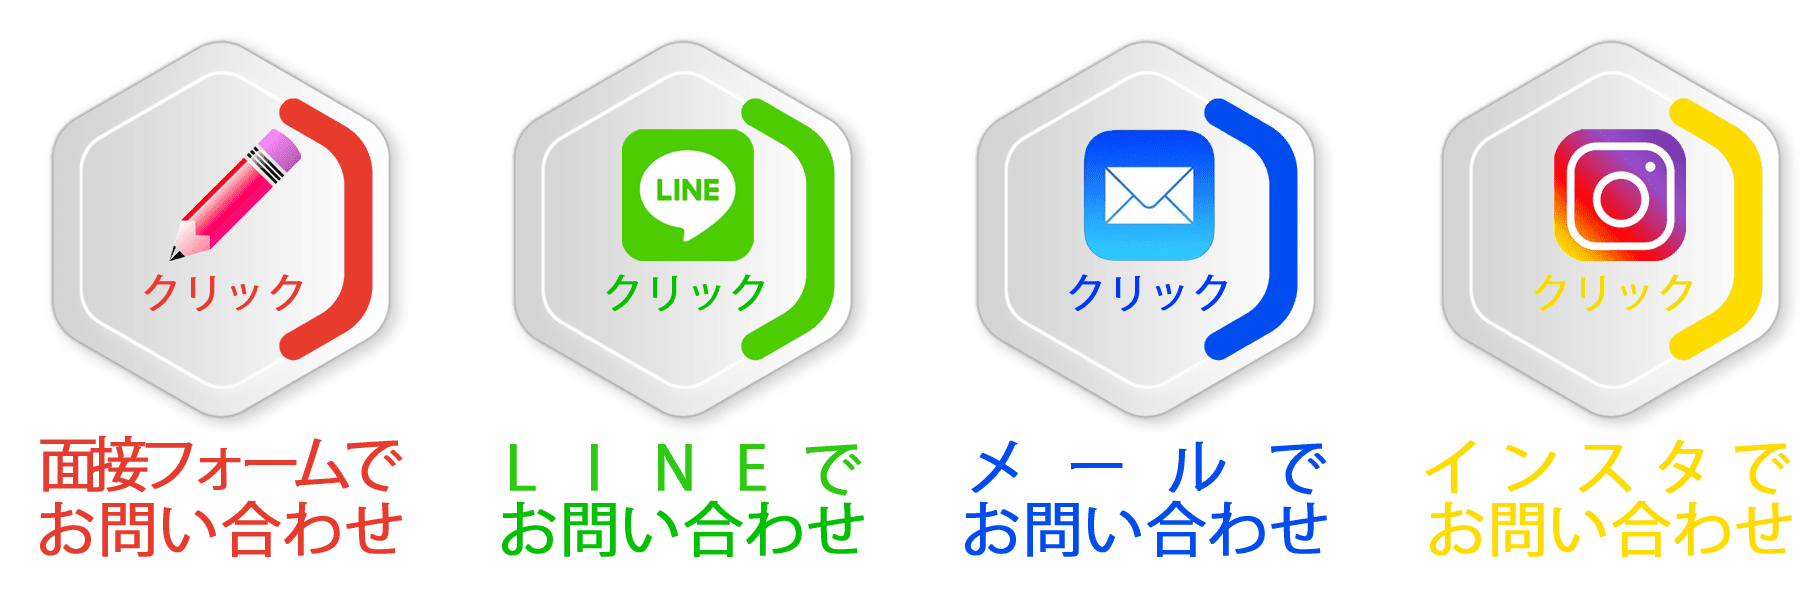 面接フォーム・LINE・メール・インスタグラム